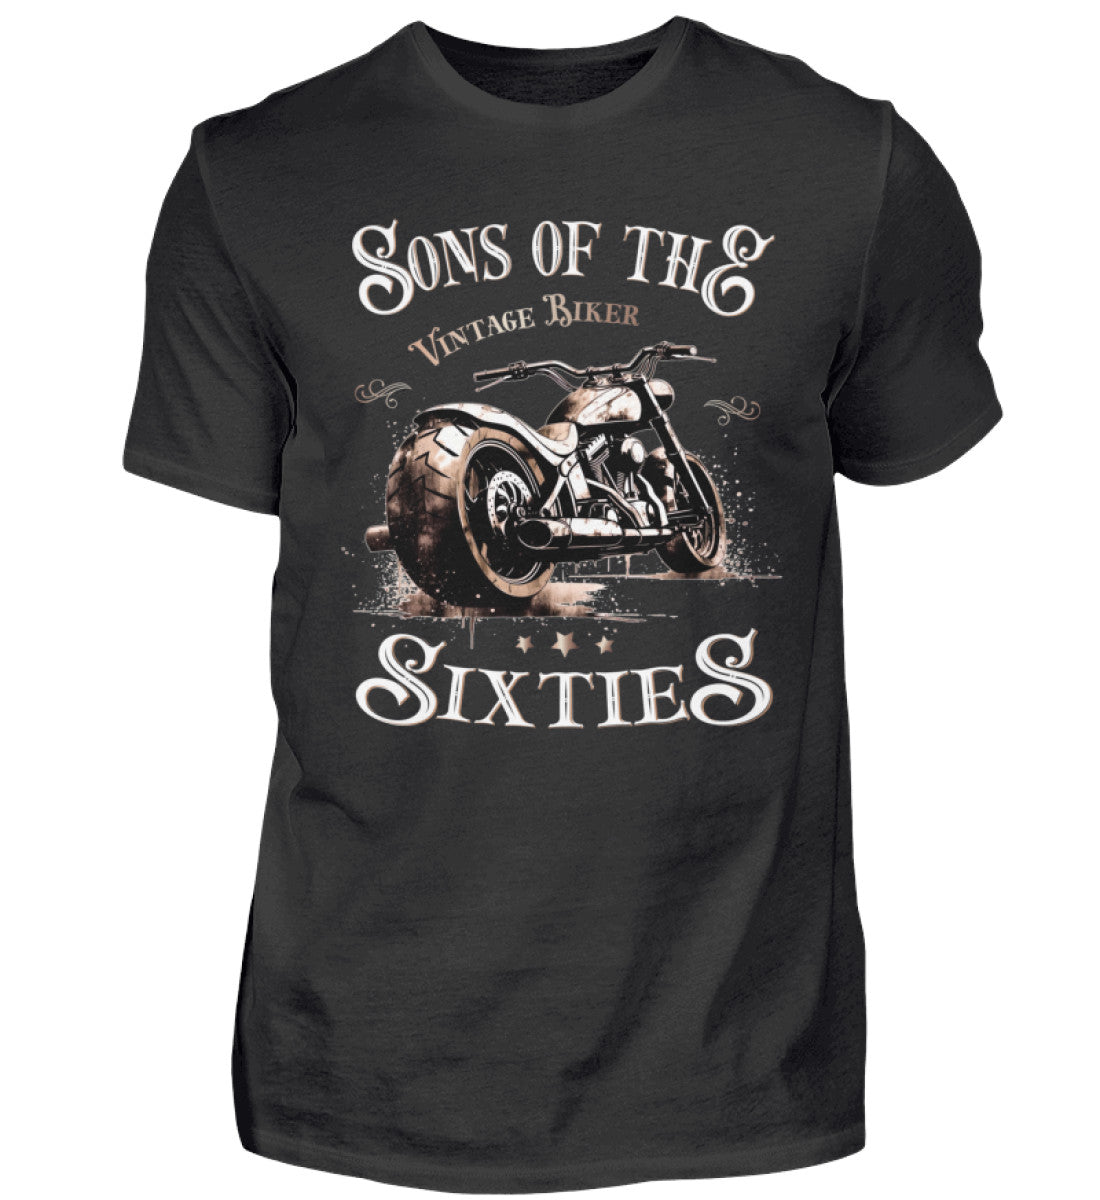 Ein Biker T-Shirt für Motorradfahrer von Wingbikers mit dem Aufdruck, Sons of the Sixties - Vintage Biker, in schwarz.